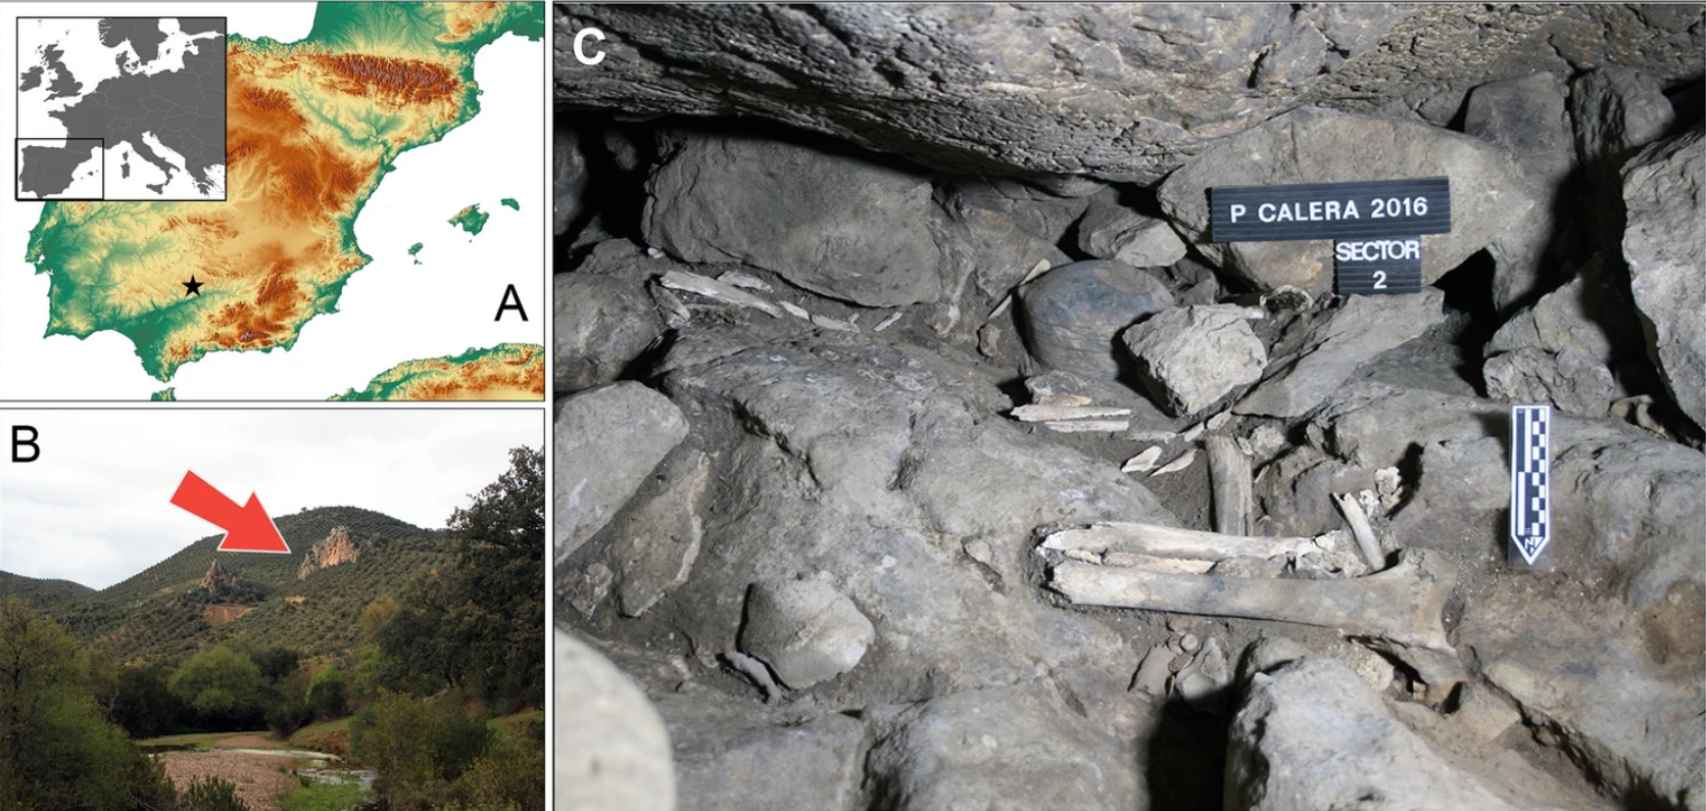 Ubicación de la cueva en el mapa y vista de uno de los depósitos excavados.